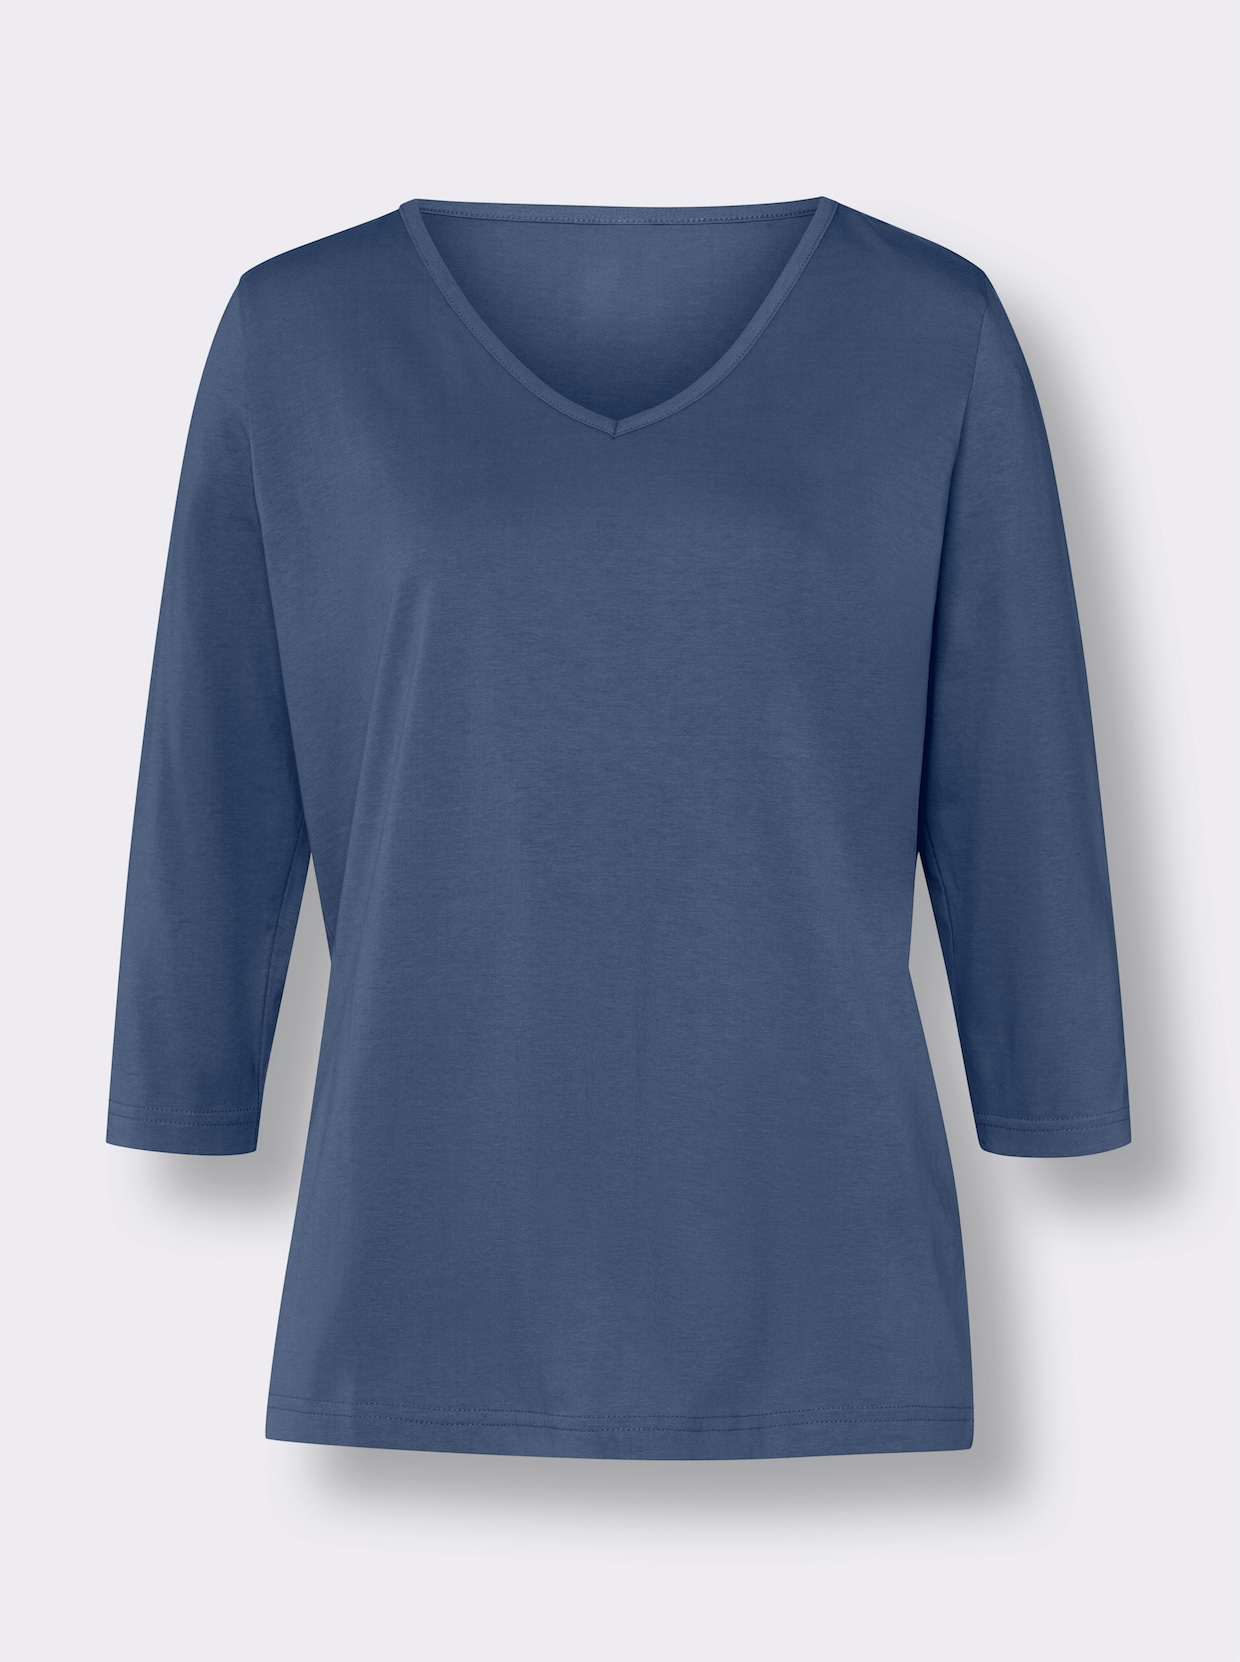 Tričko s 3/4 rukávem - džínová modrá